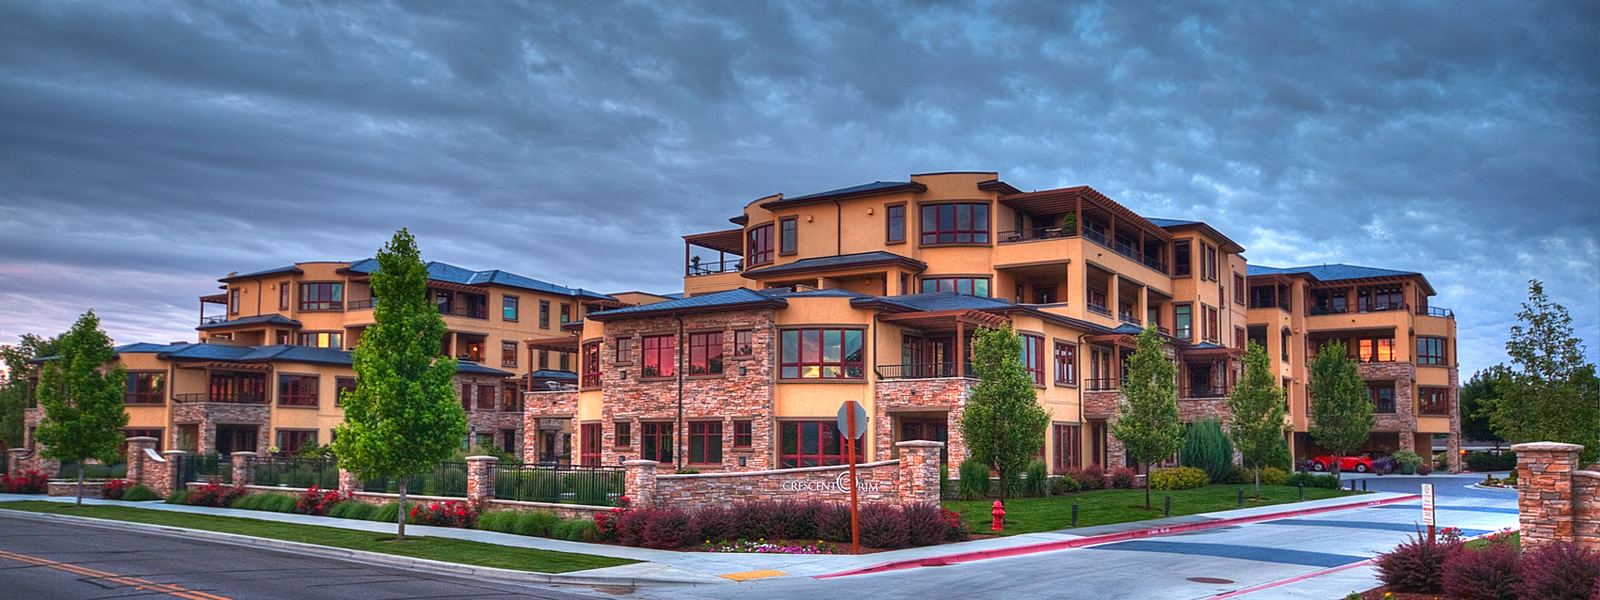 Spectacula Condominiums at Crescent Rim in Boise